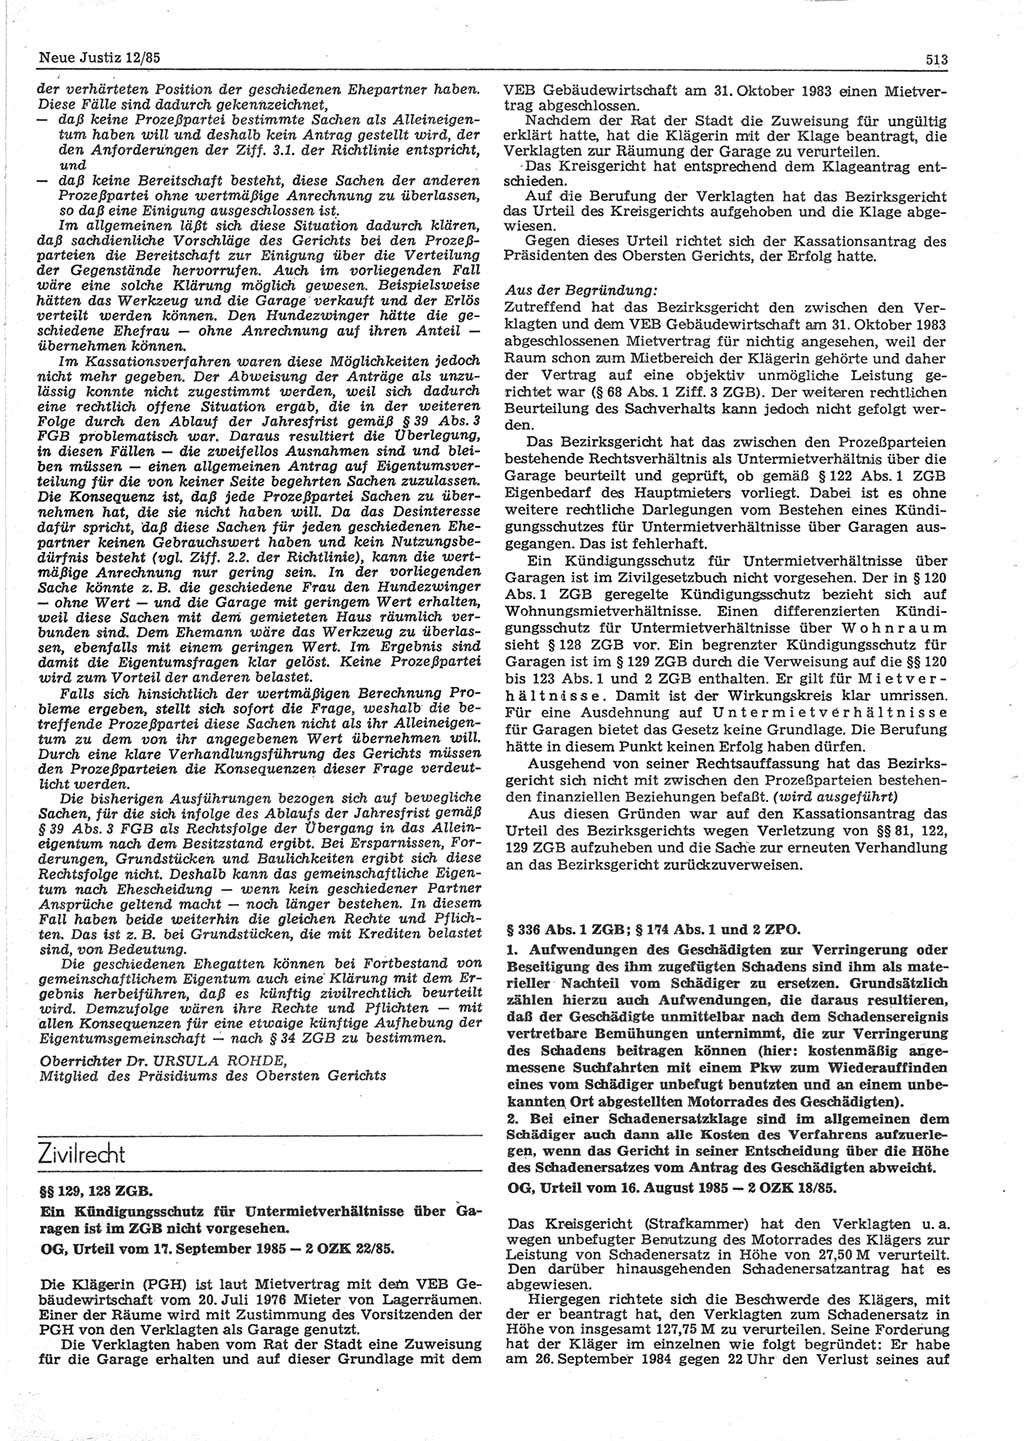 Neue Justiz (NJ), Zeitschrift für sozialistisches Recht und Gesetzlichkeit [Deutsche Demokratische Republik (DDR)], 39. Jahrgang 1985, Seite 513 (NJ DDR 1985, S. 513)